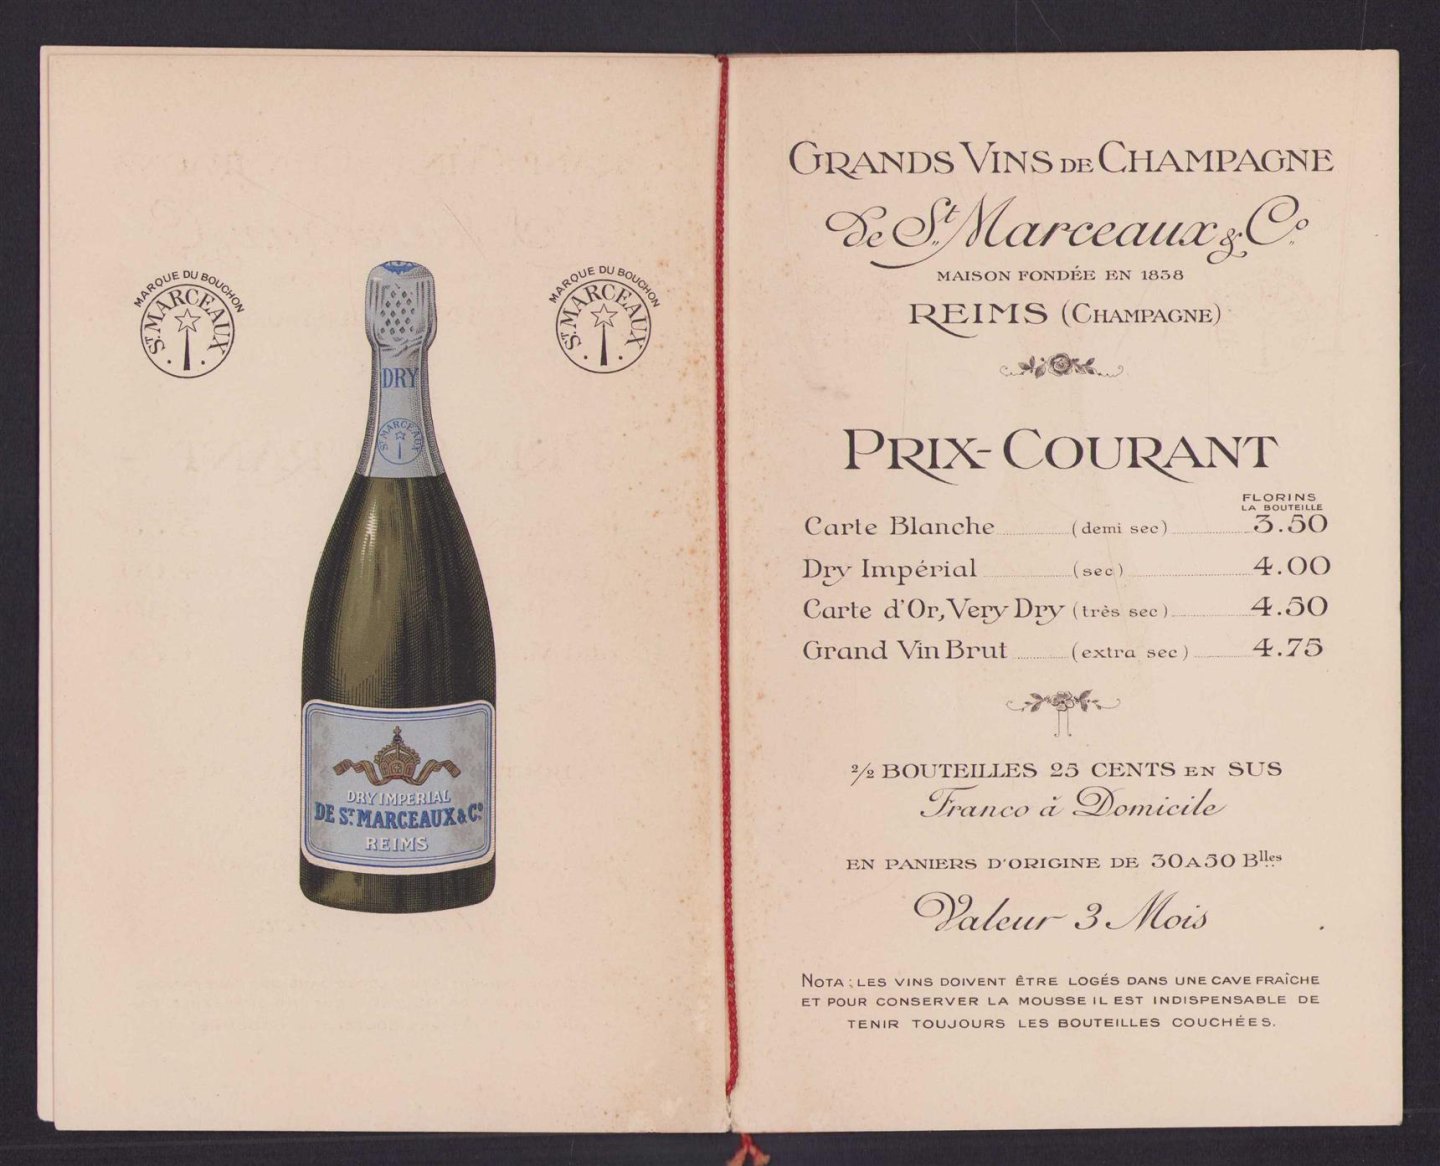 n.n - (BROCHURE) Grand Vins de Champagne St Marceaux  Rheims